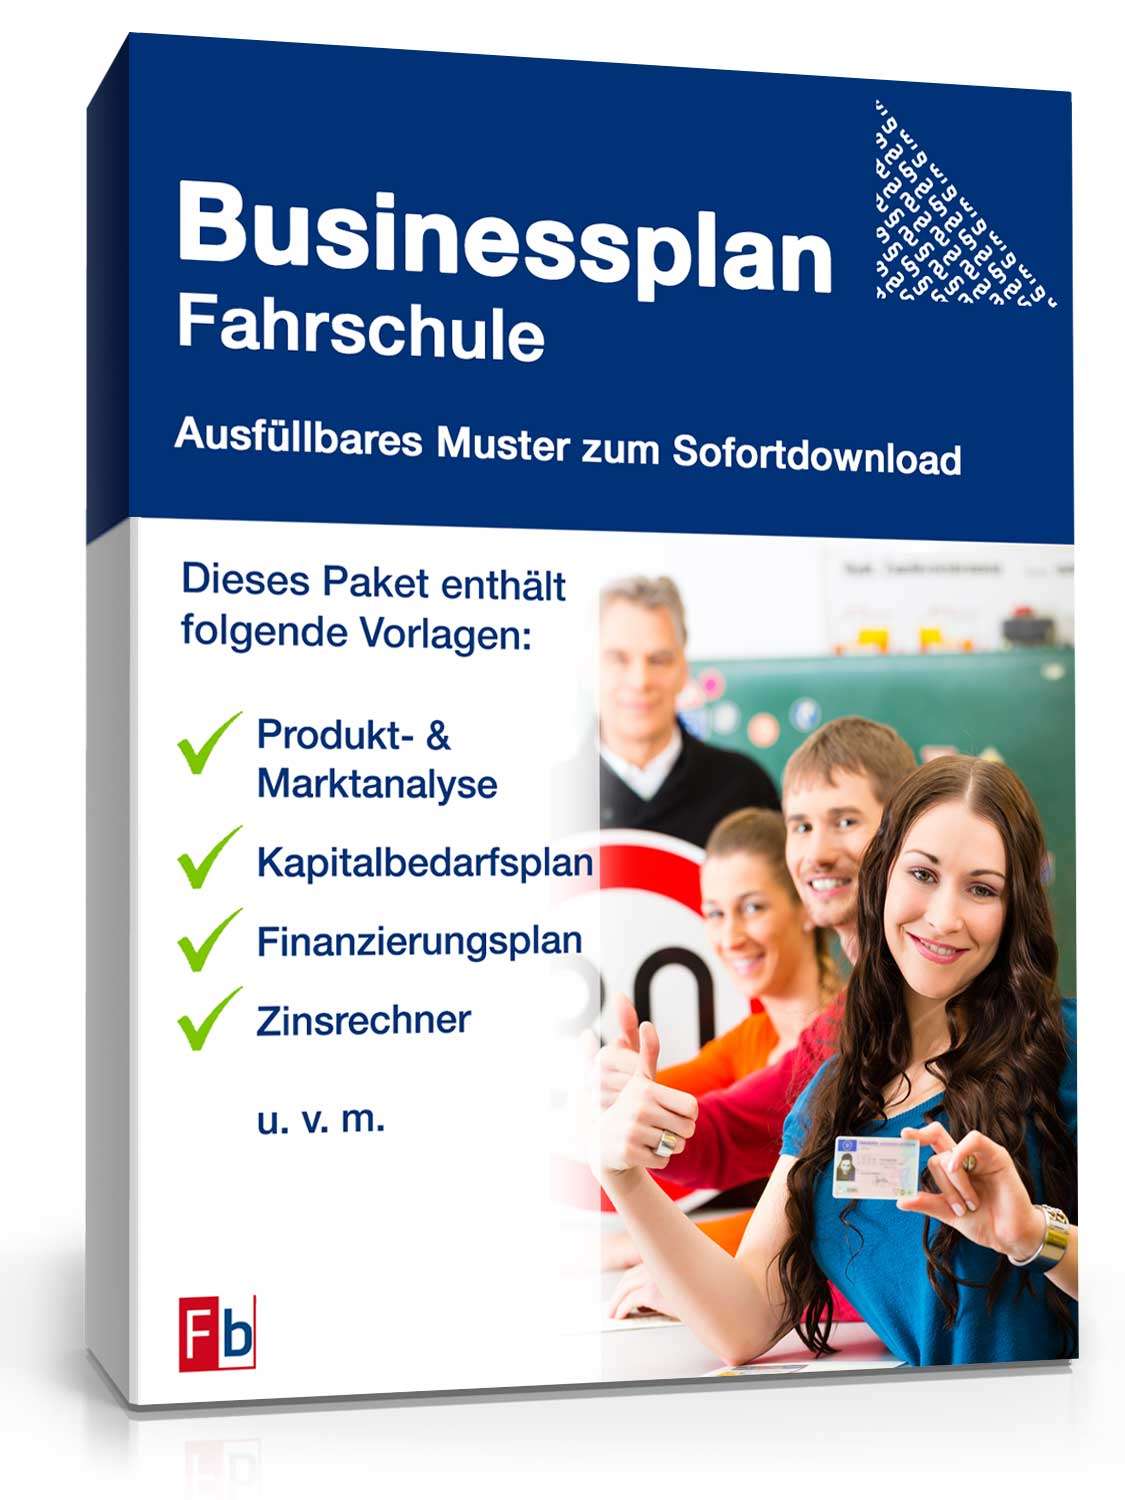 Hauptbild des Produkts: Businessplan Fahrschule